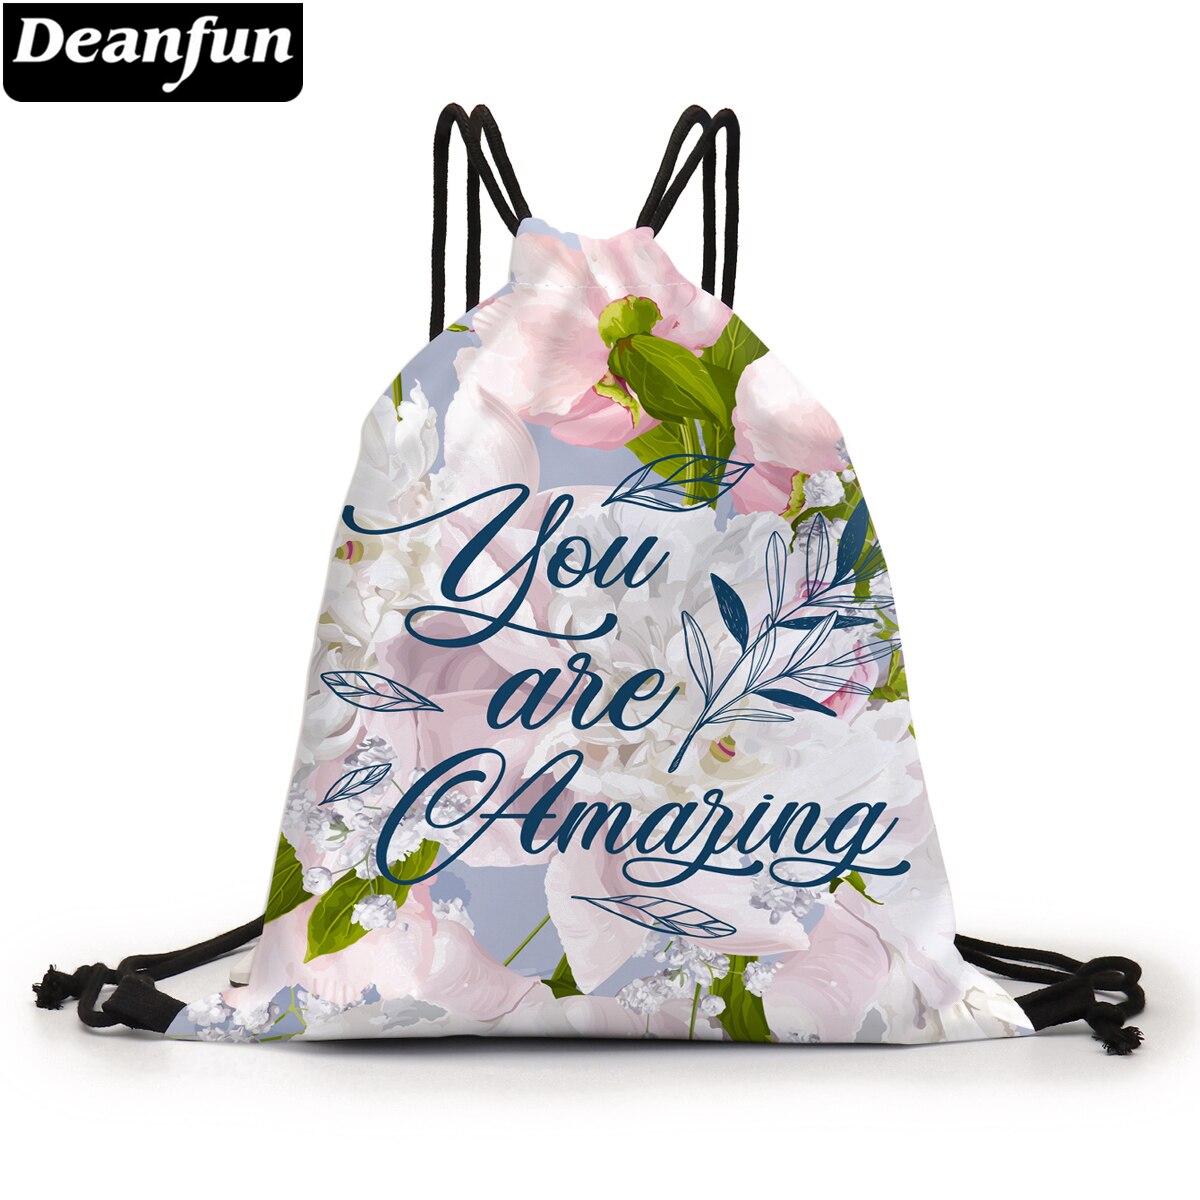 Deanfun Tasje Verbazingwekkende Bloemrijke 3D Gedrukt Bag Koord Rugzak Voor Vrouwen D60446